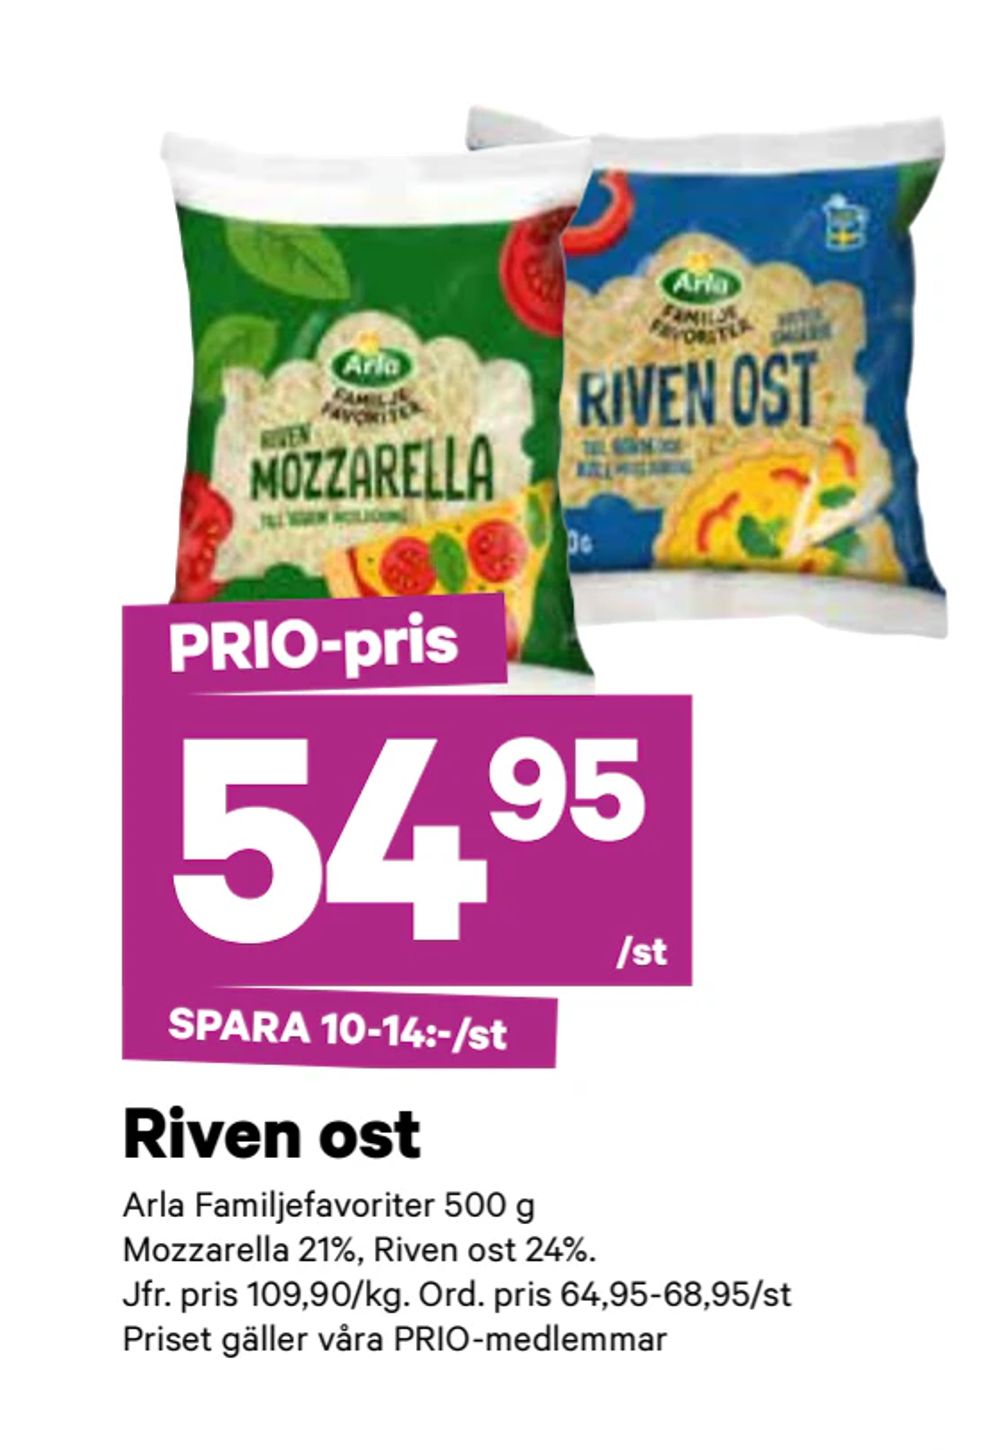 Erbjudanden på Riven ost från City Gross för 54,95 kr